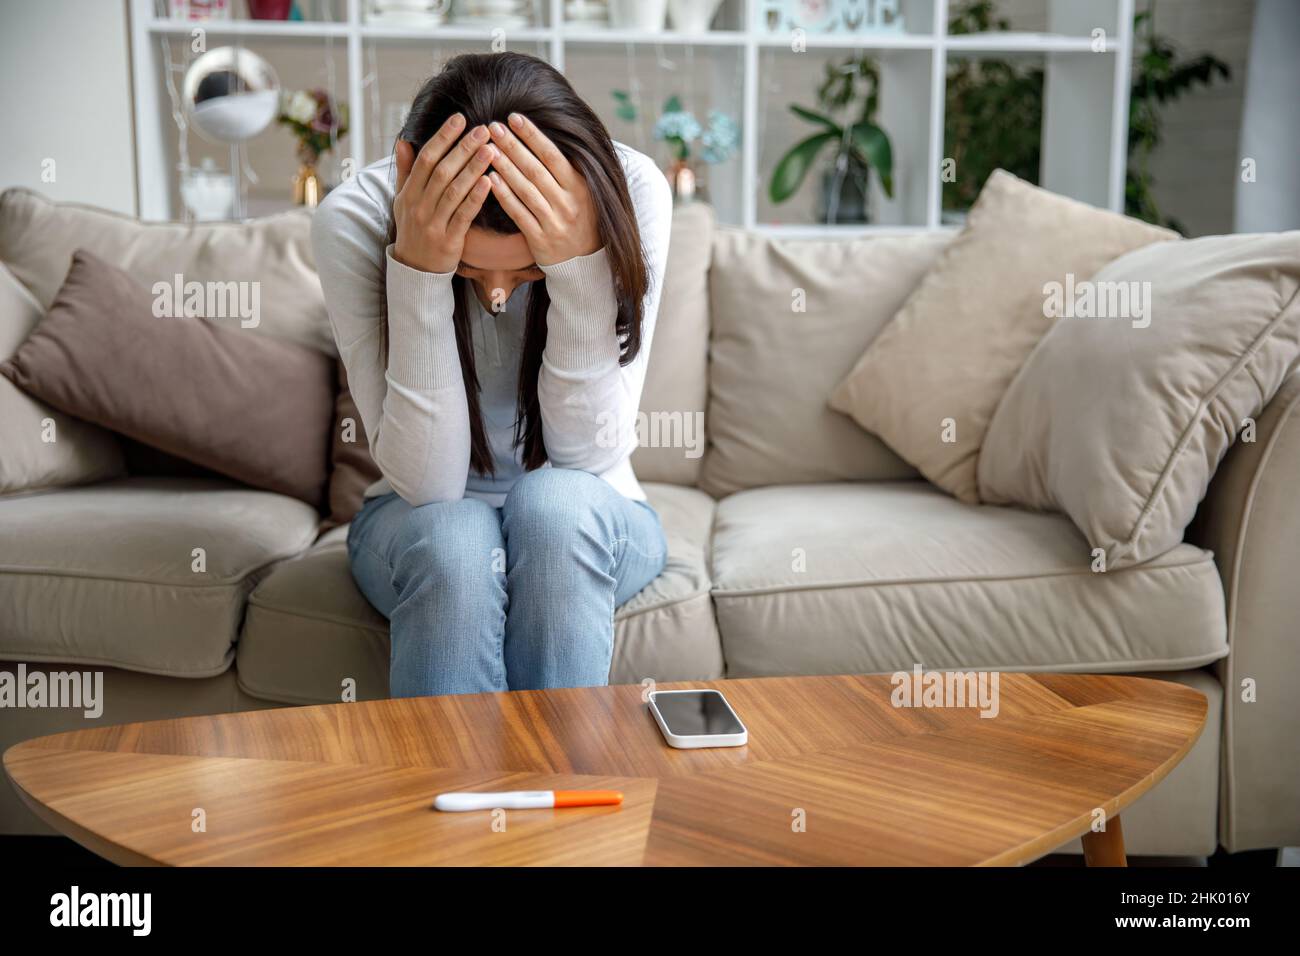 Eine traurige junge Frau hält einen Schwangerschaftstest in der Hand. Das Konzept der unerwünschten Schwangerschaft. Stockfoto